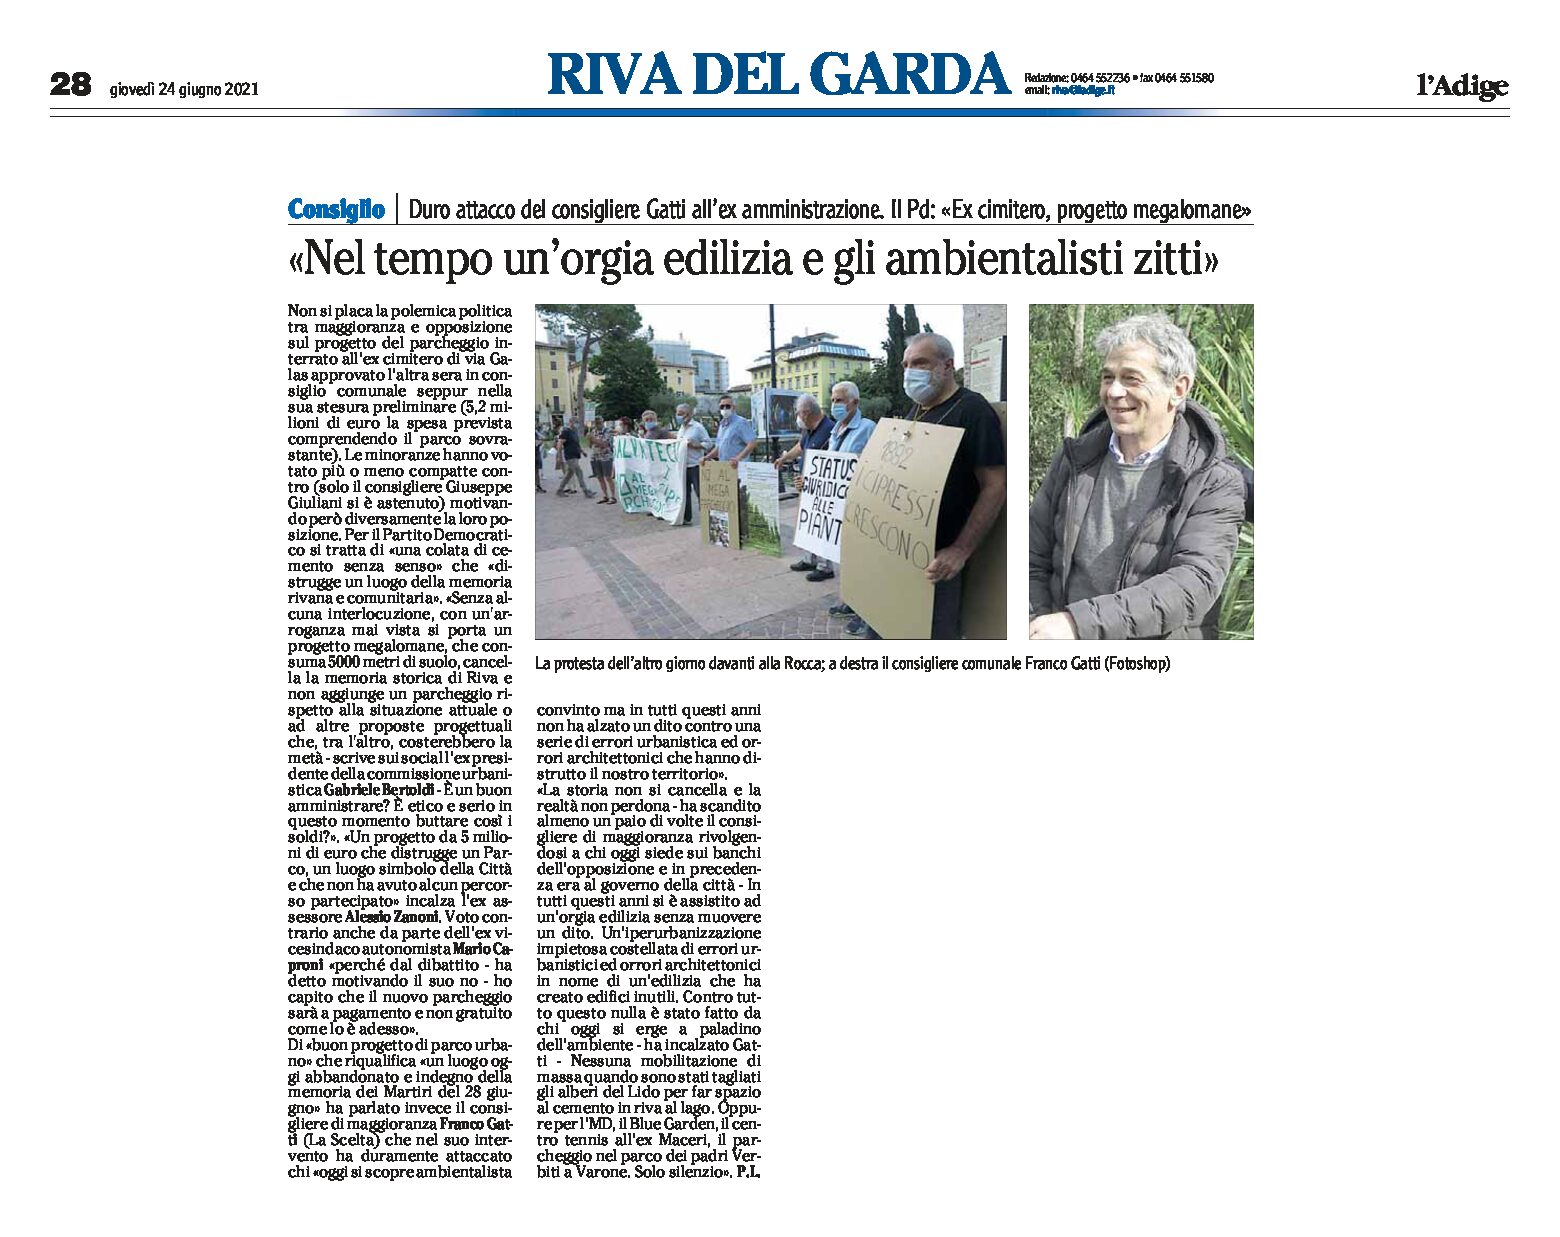 Riva, ex cimitero: progetto megalomane